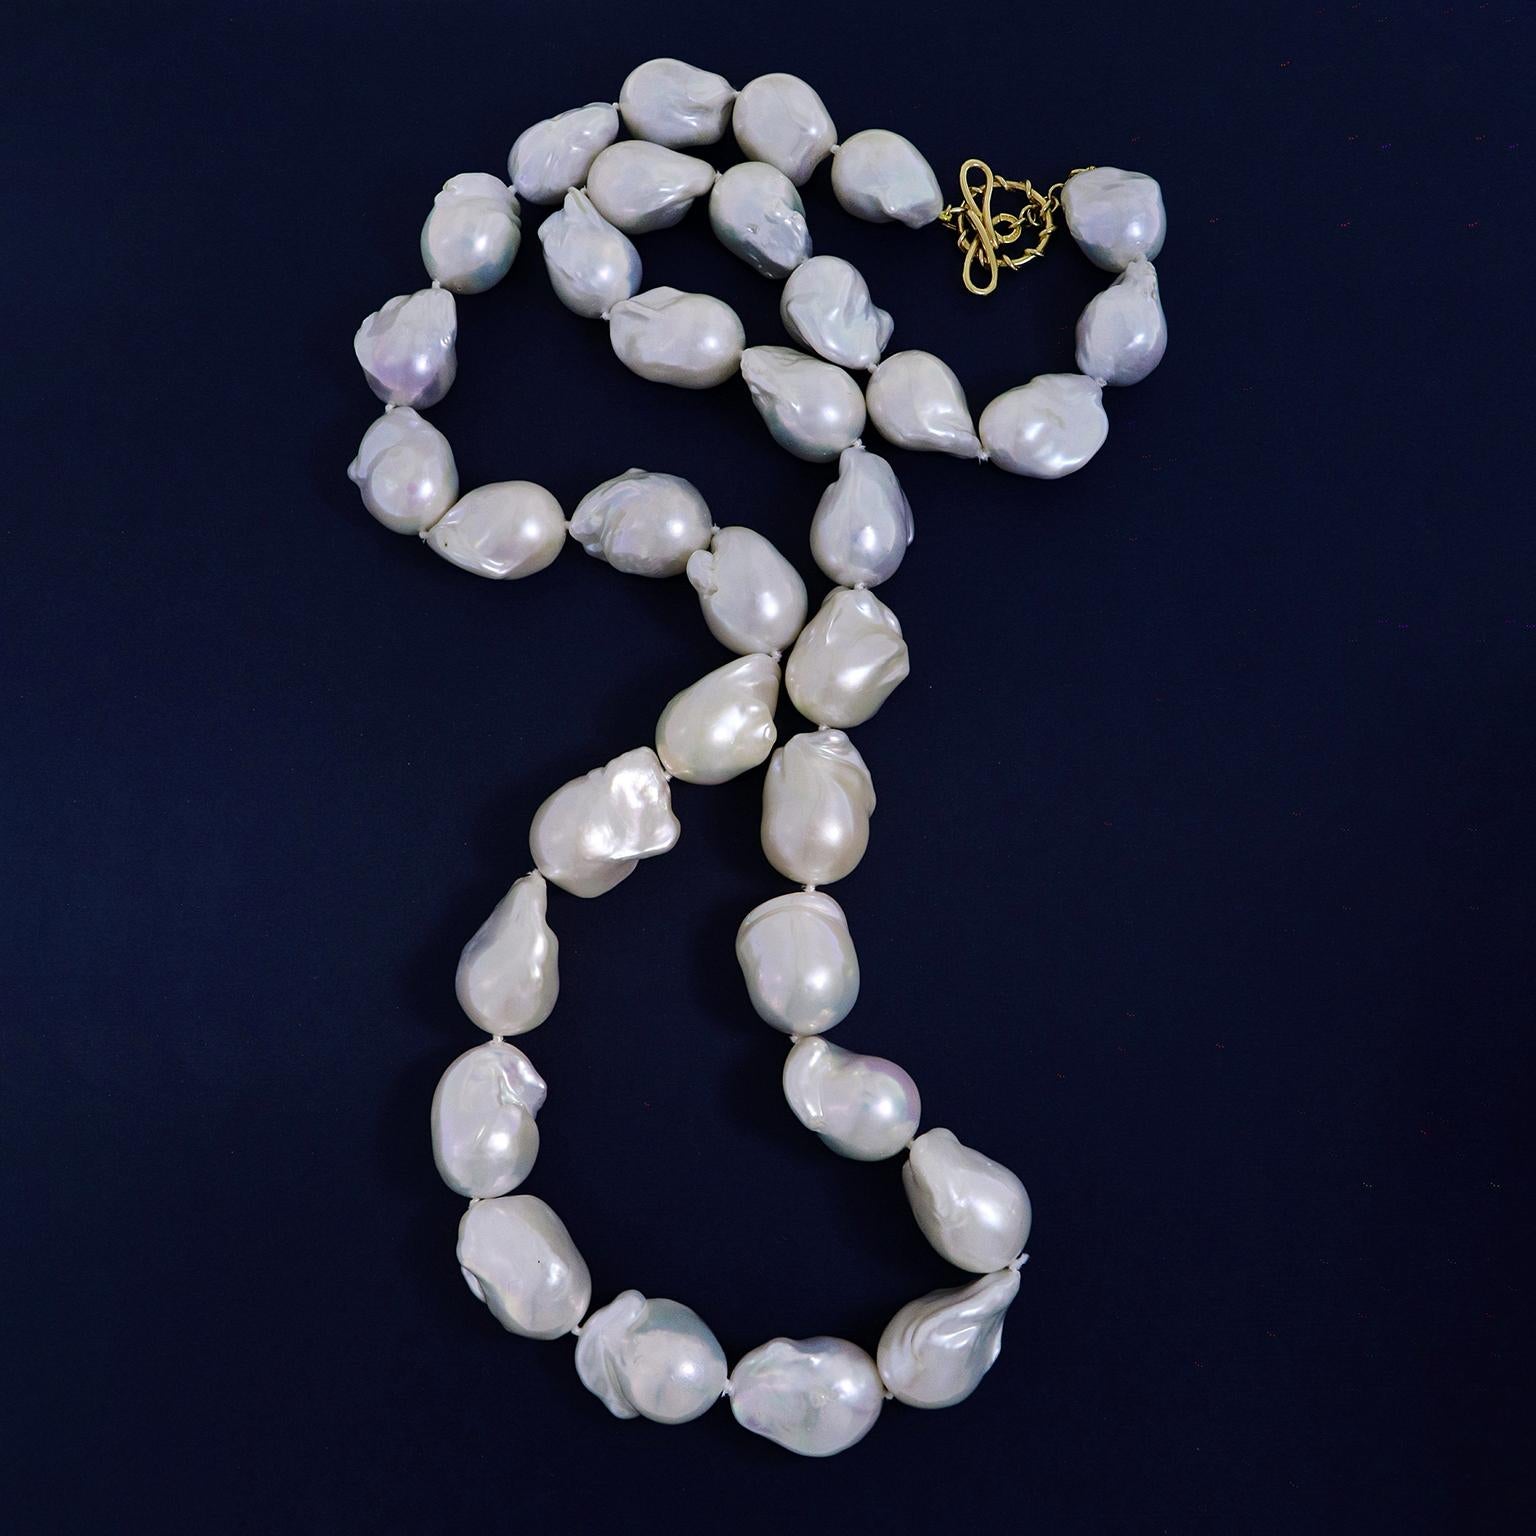 Une atmosphère de mer est évoquée par ce collier de perles. De grosses perles baroques d'eau douce sont rassemblées sur un fil, chacune reflétant un éclat irisé sur leur corps de nacre unique. Le poids total de la pierre est de 900 carats. Un nœud